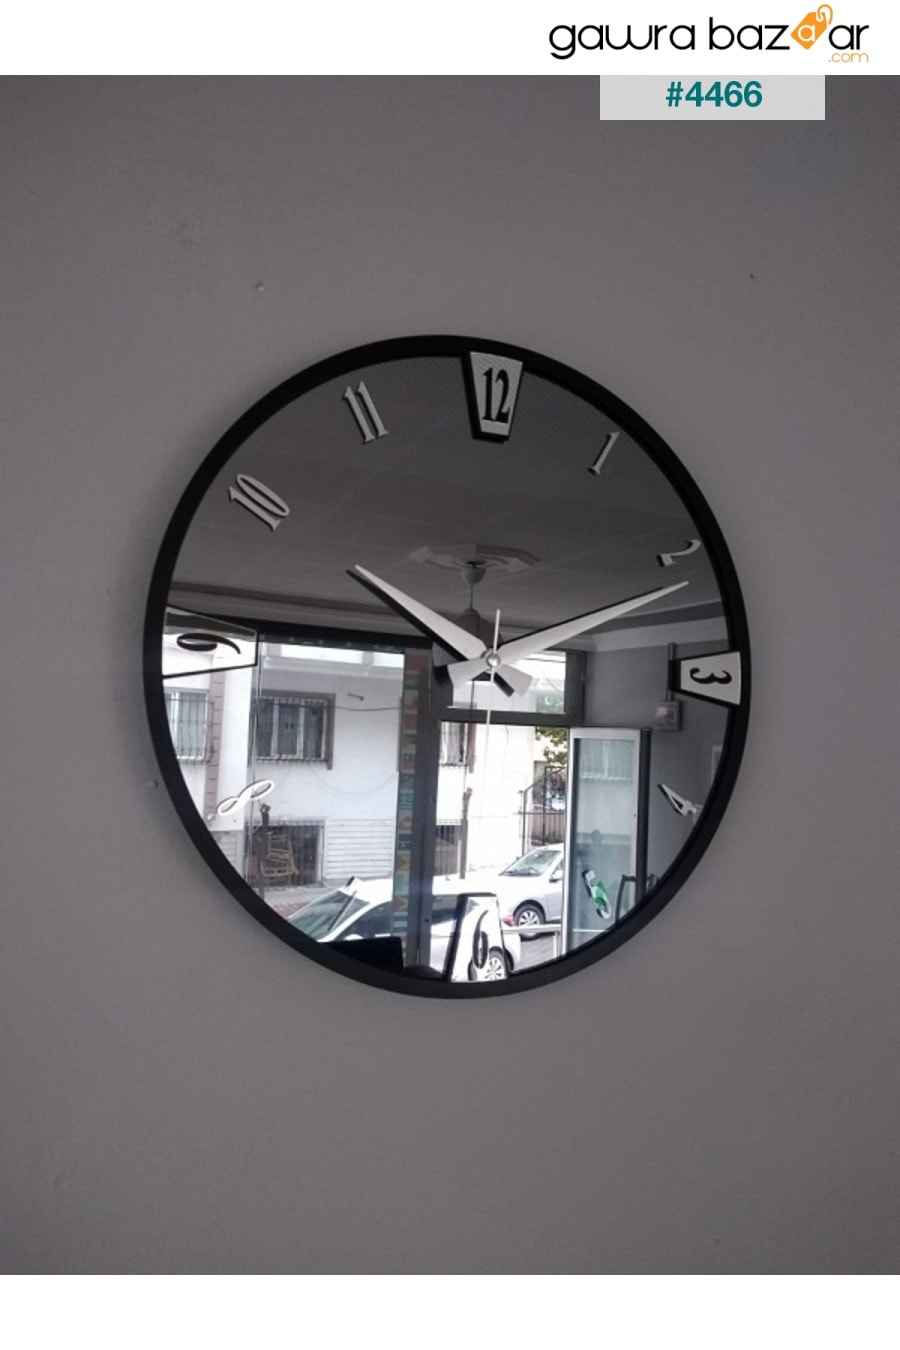 ساعة حائط مزخرفة بمرآة حقيقية (40 سم) harika crown 4